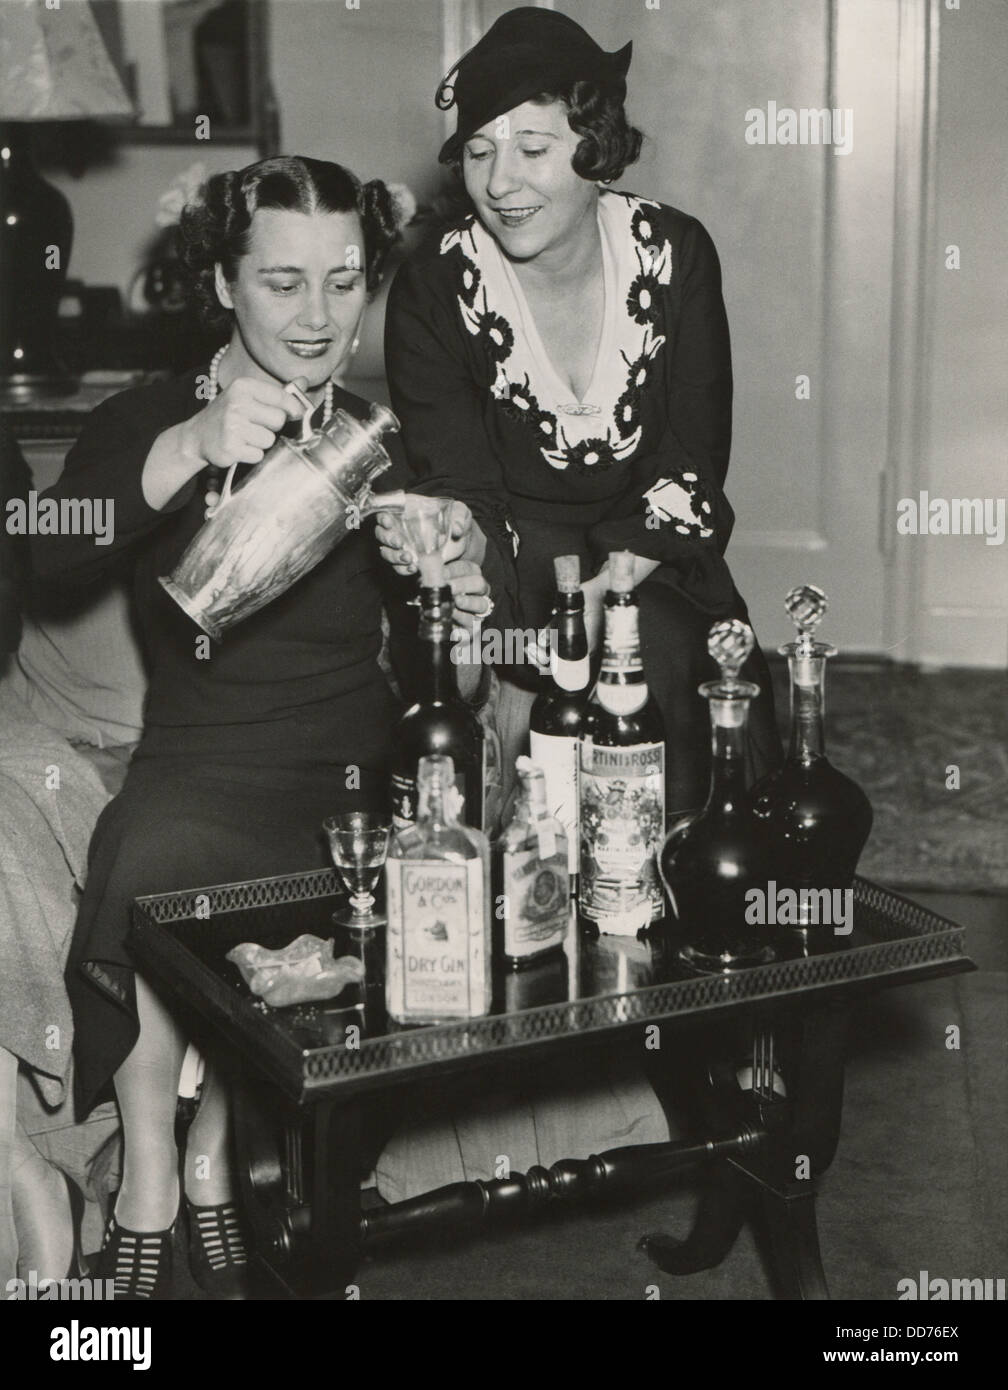 Opernsänger feiern die Aufhebung des Verbots am 5. Dezember 1933. Gießen einen Cocktail, Gladys Swarthout und Queena Mario. Stockfoto